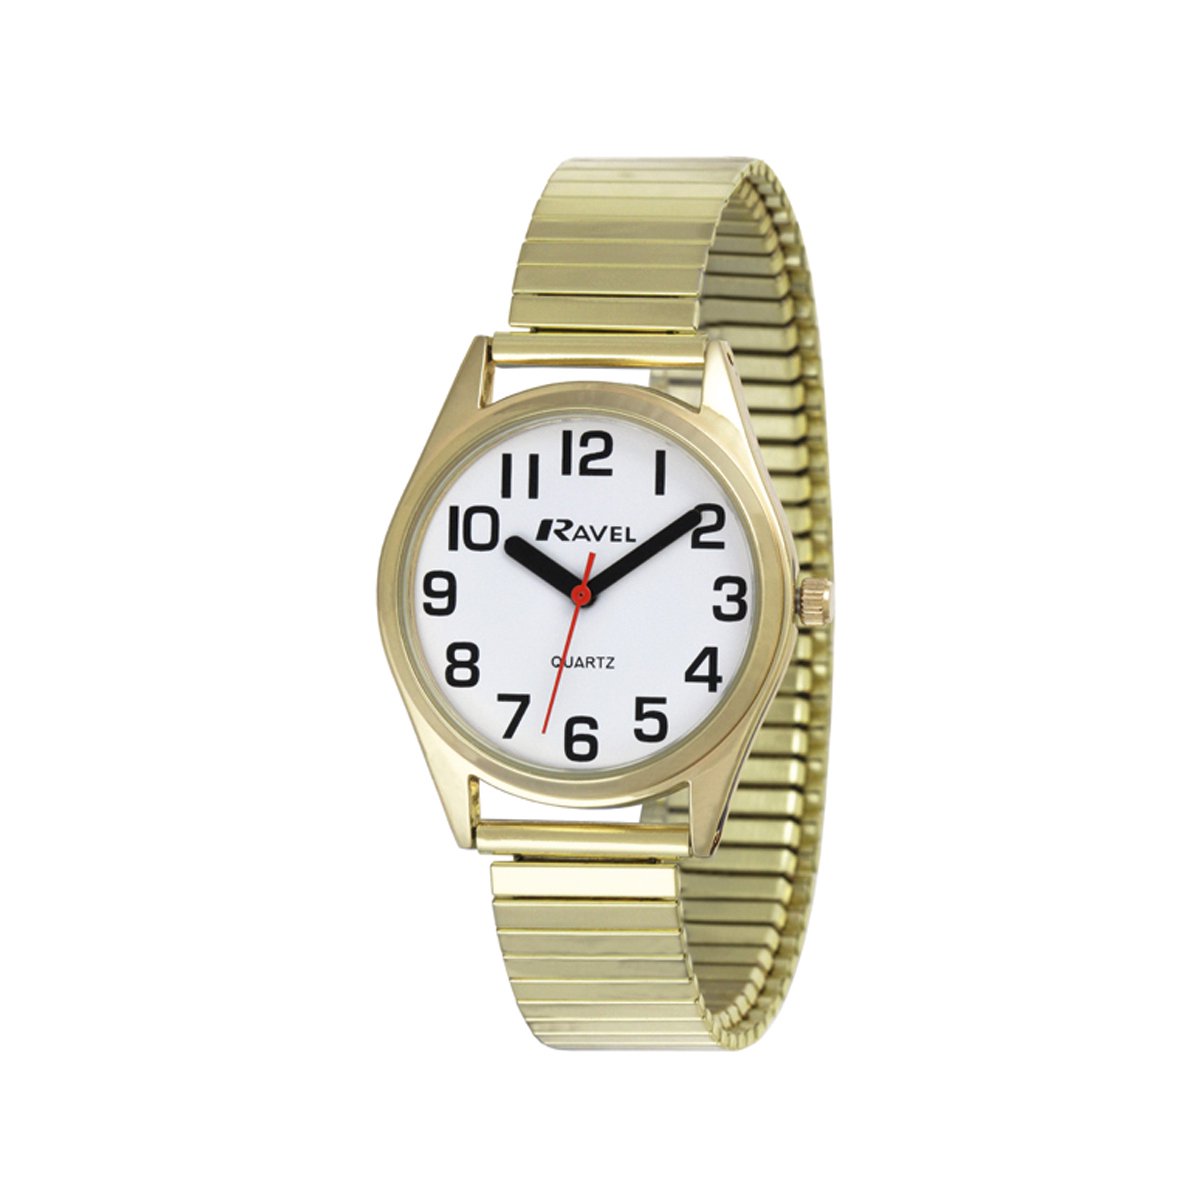 Ravel - dames super gewaagd zicht hulp roestvrij staal expander armband horloge met grote getallen en handen (27mm horlogekast) - Analoge Kwarts - R0225.02.2 - goudkleurig / witte wijzerplaat